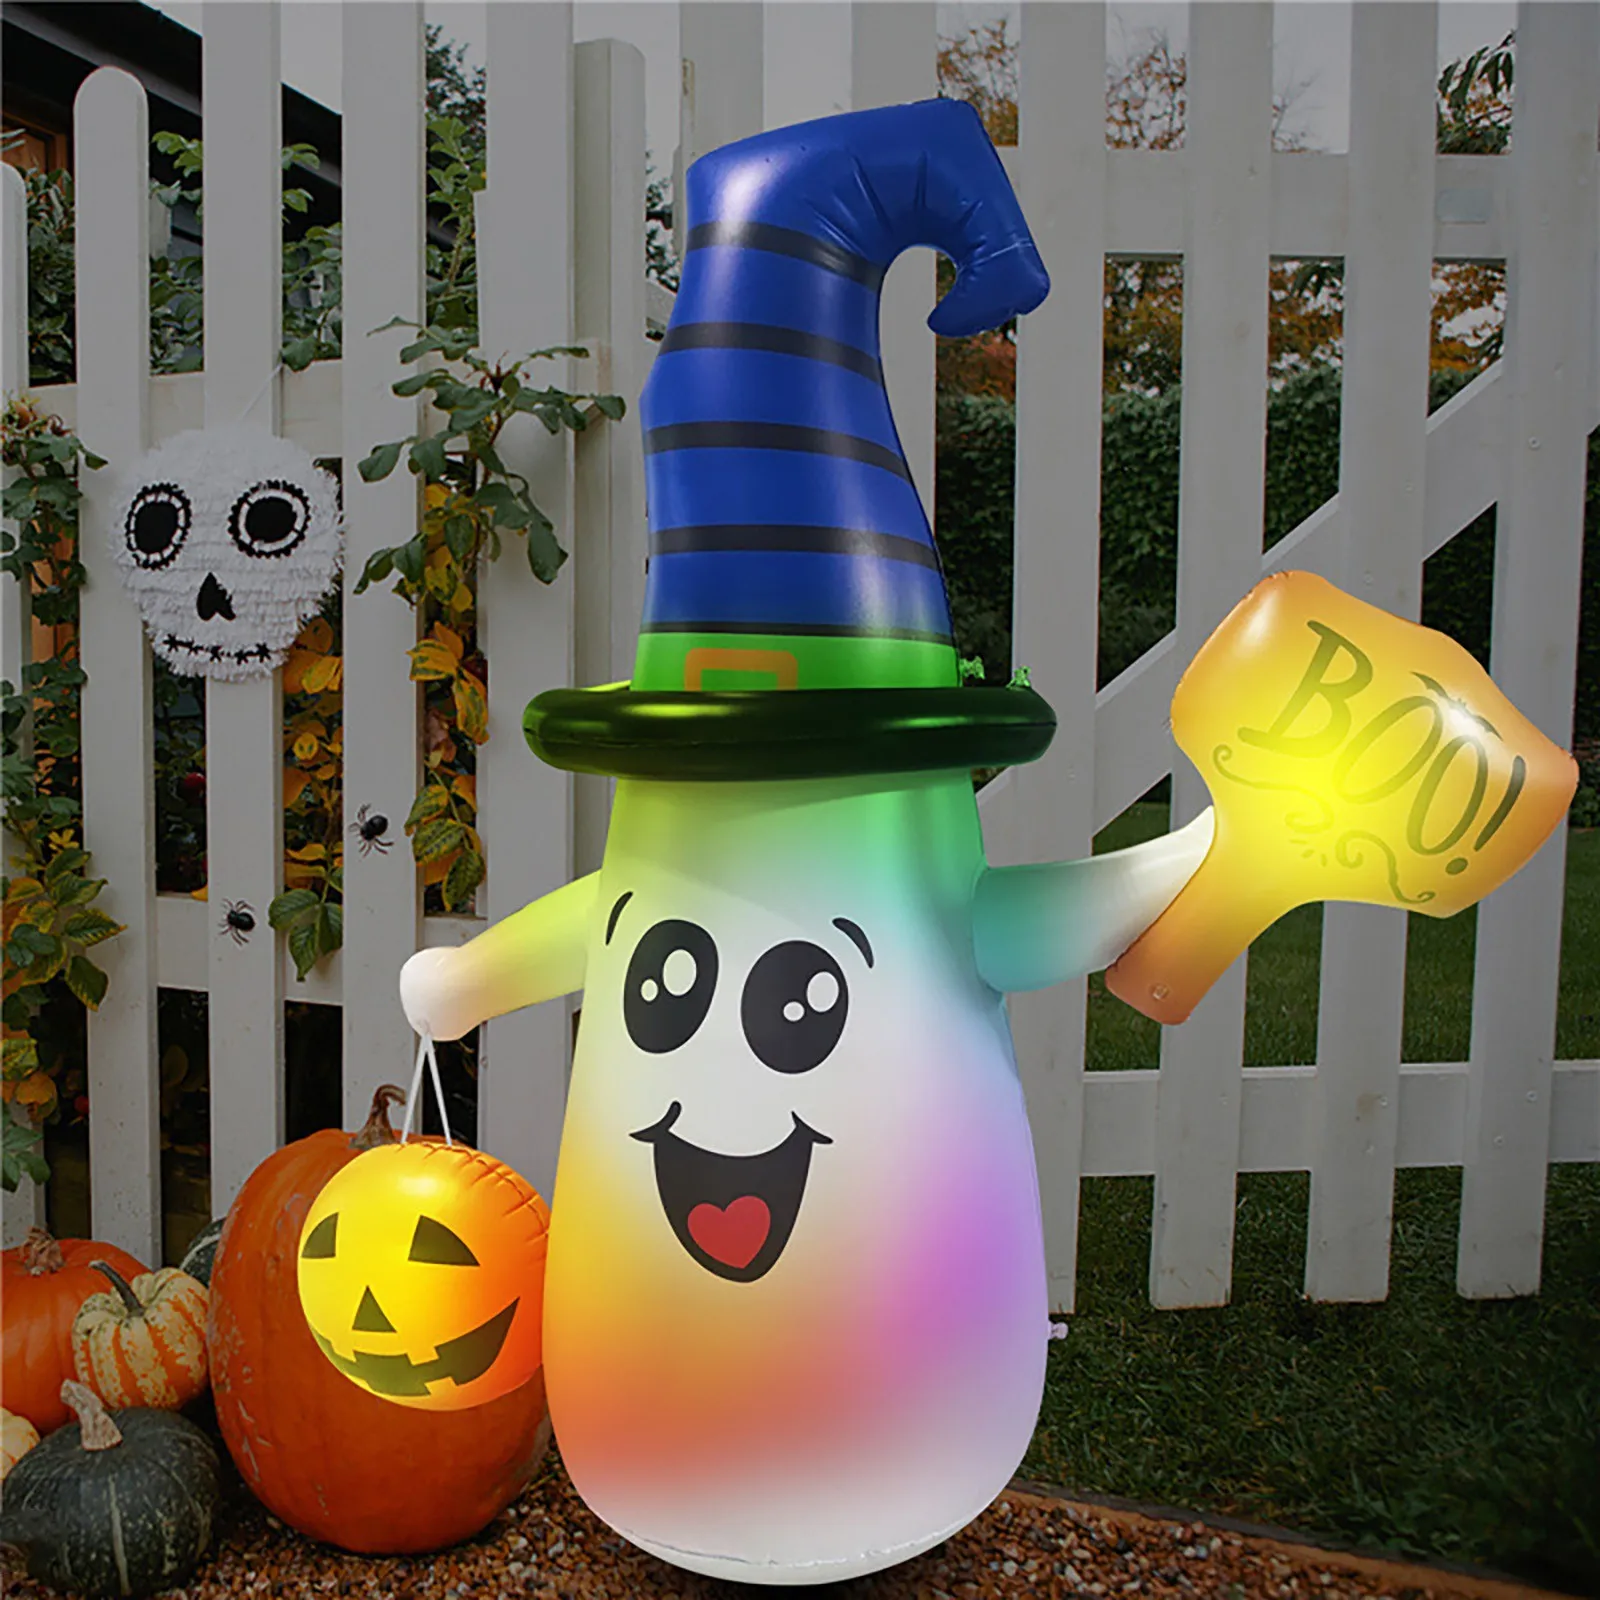 

Надувная кружка для Хэллоуина в виде призрака, Надувное украшение двора, зазор со светодиодной подсветкой, встроенная для праздника